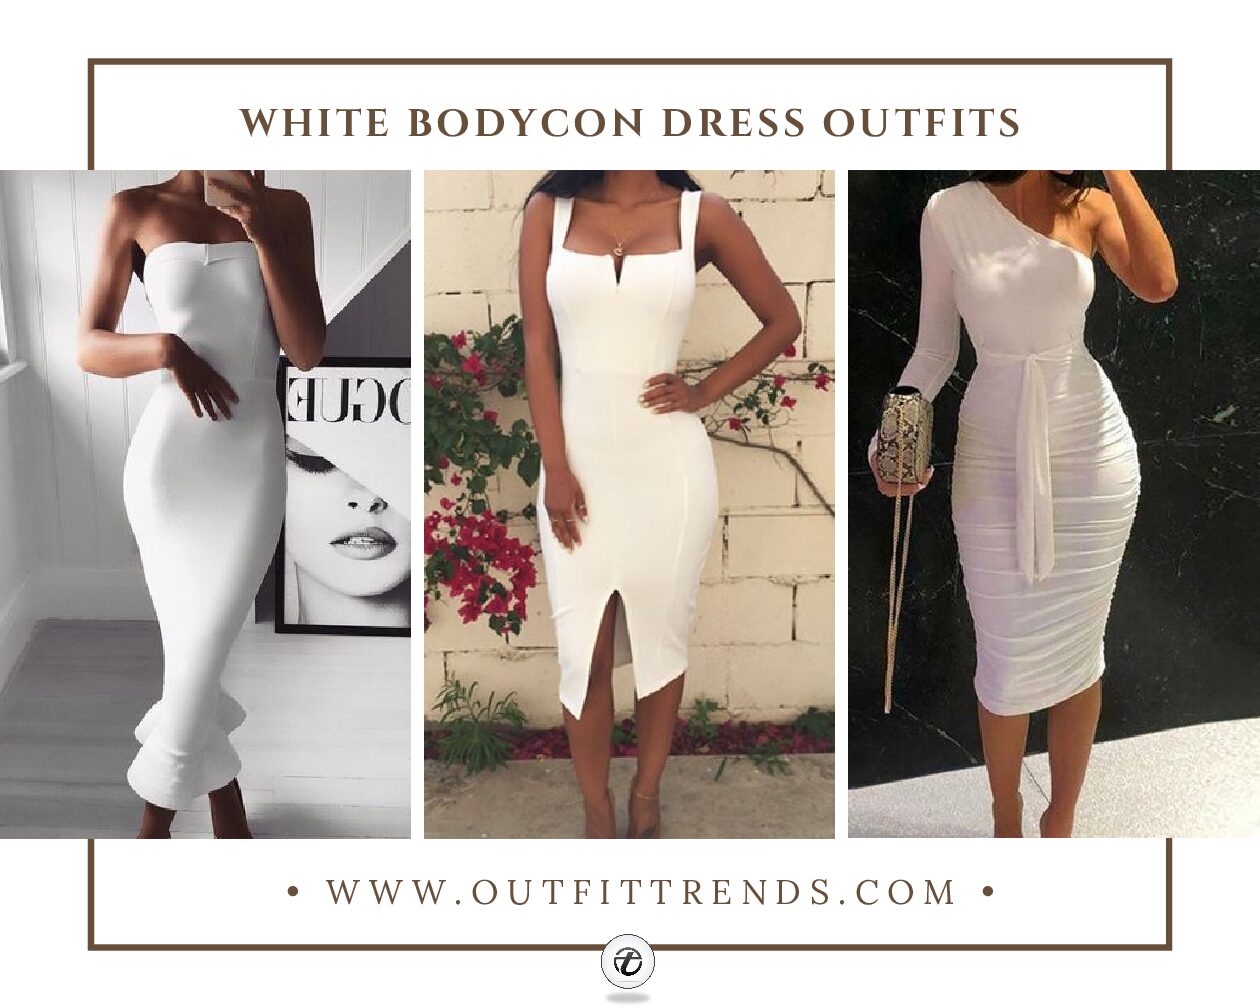 White Bodycon Dress Outfits – 22 White Bodycon Dresses You Need